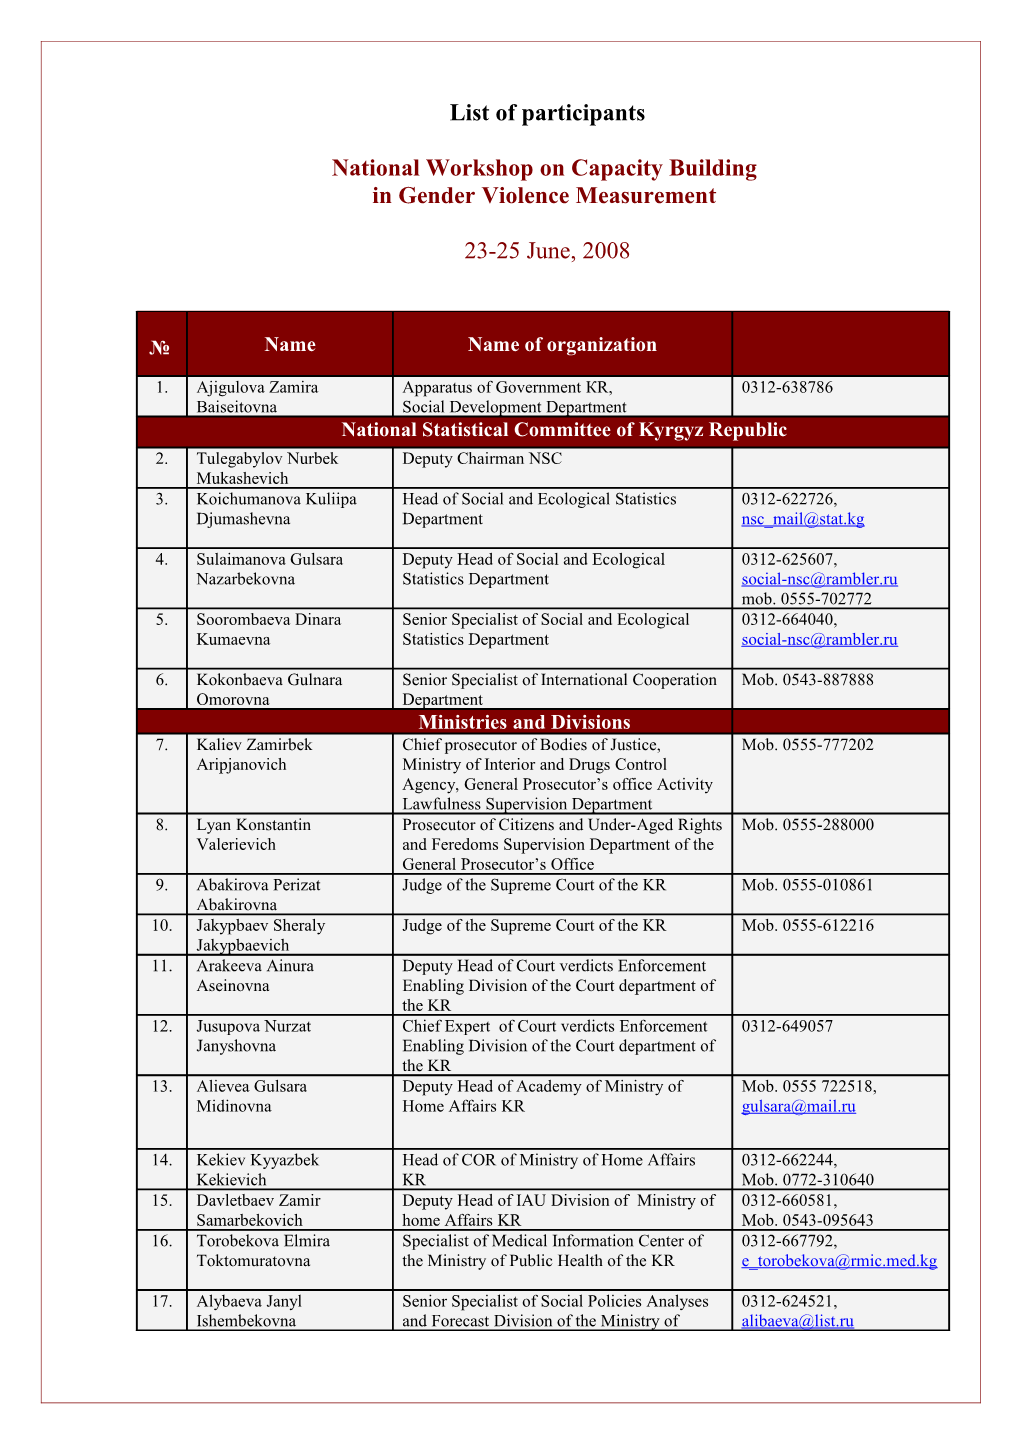 List of Participants s6